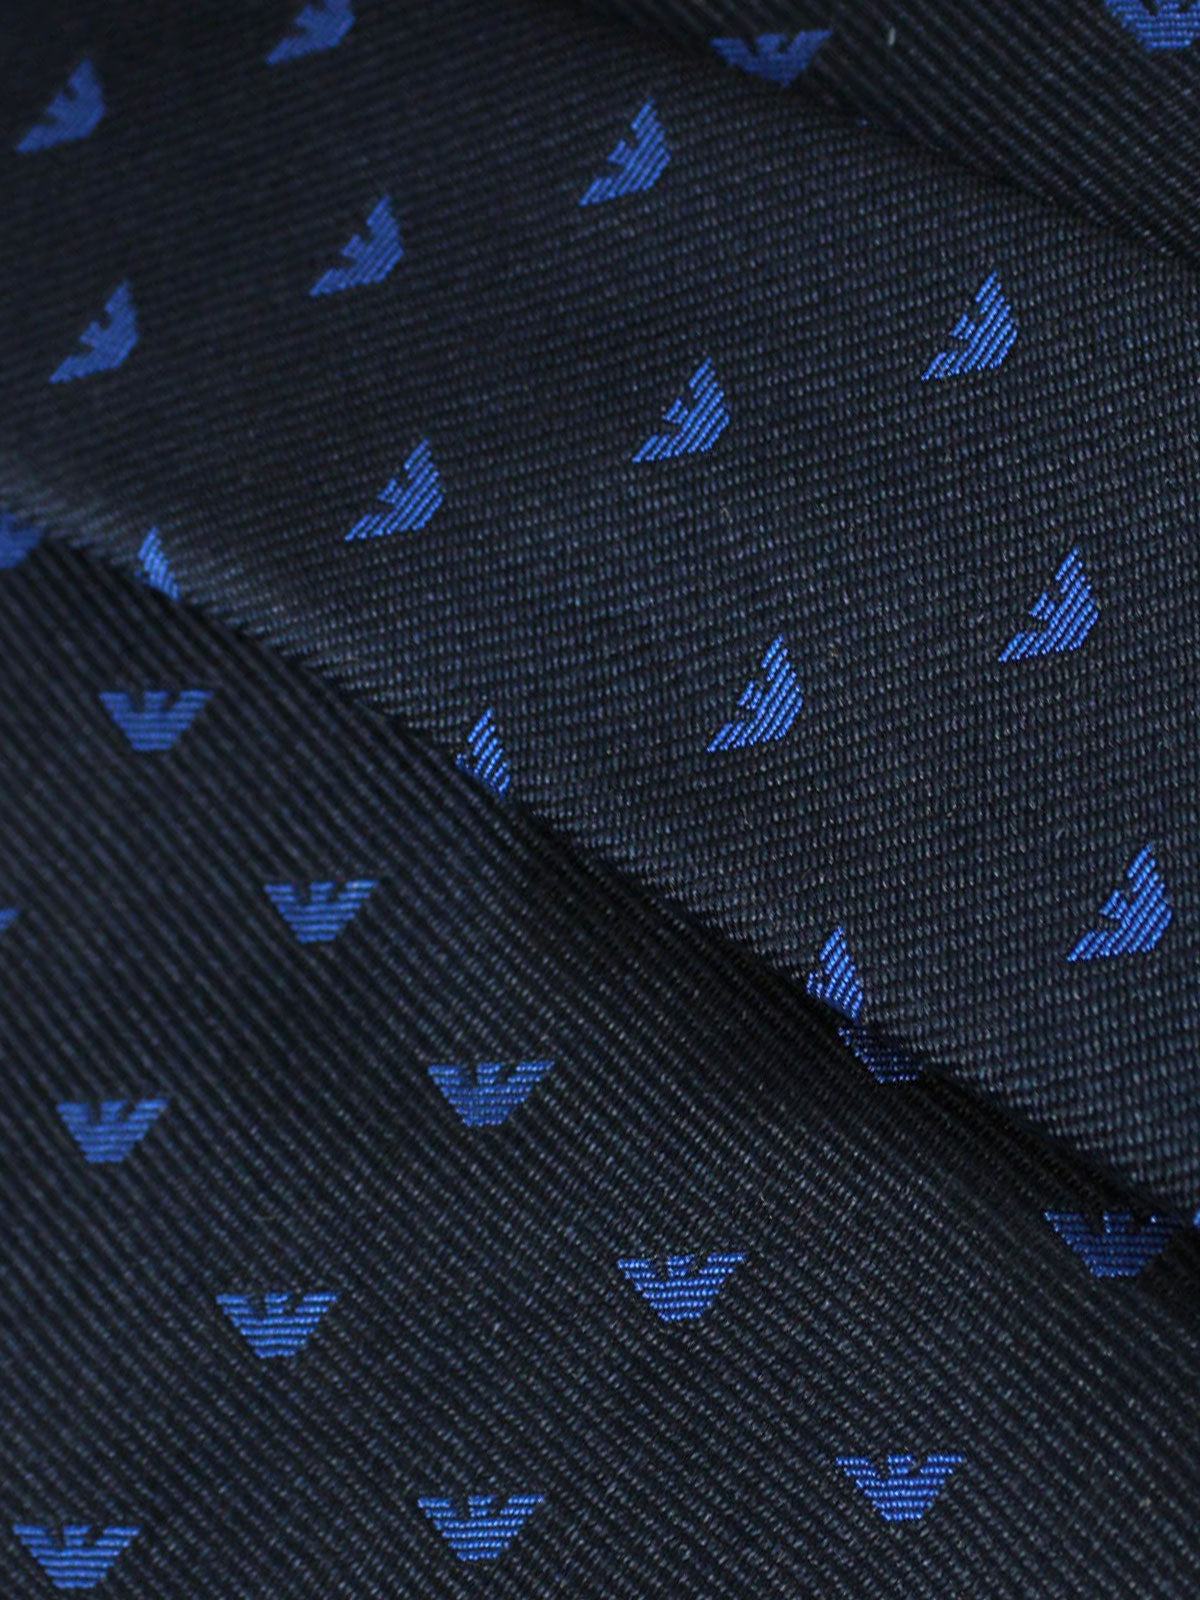 Armani Tie Dark Navy Royal Blue Logo Micro Eagle - Tie Deals